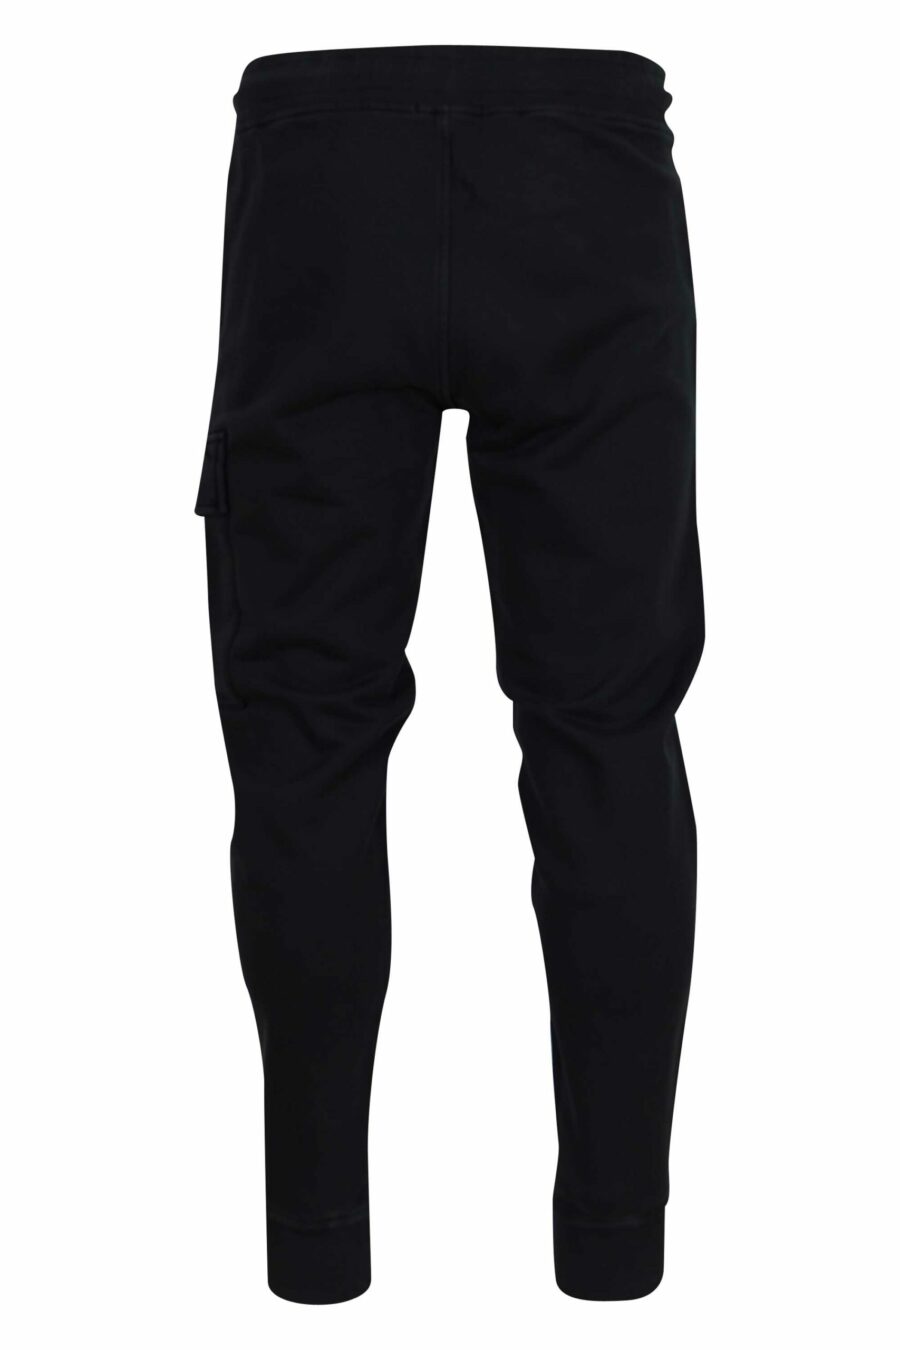 Pantalón de chándal negro estilo cargo con minilogo lente - 7620943739947 2 scaled